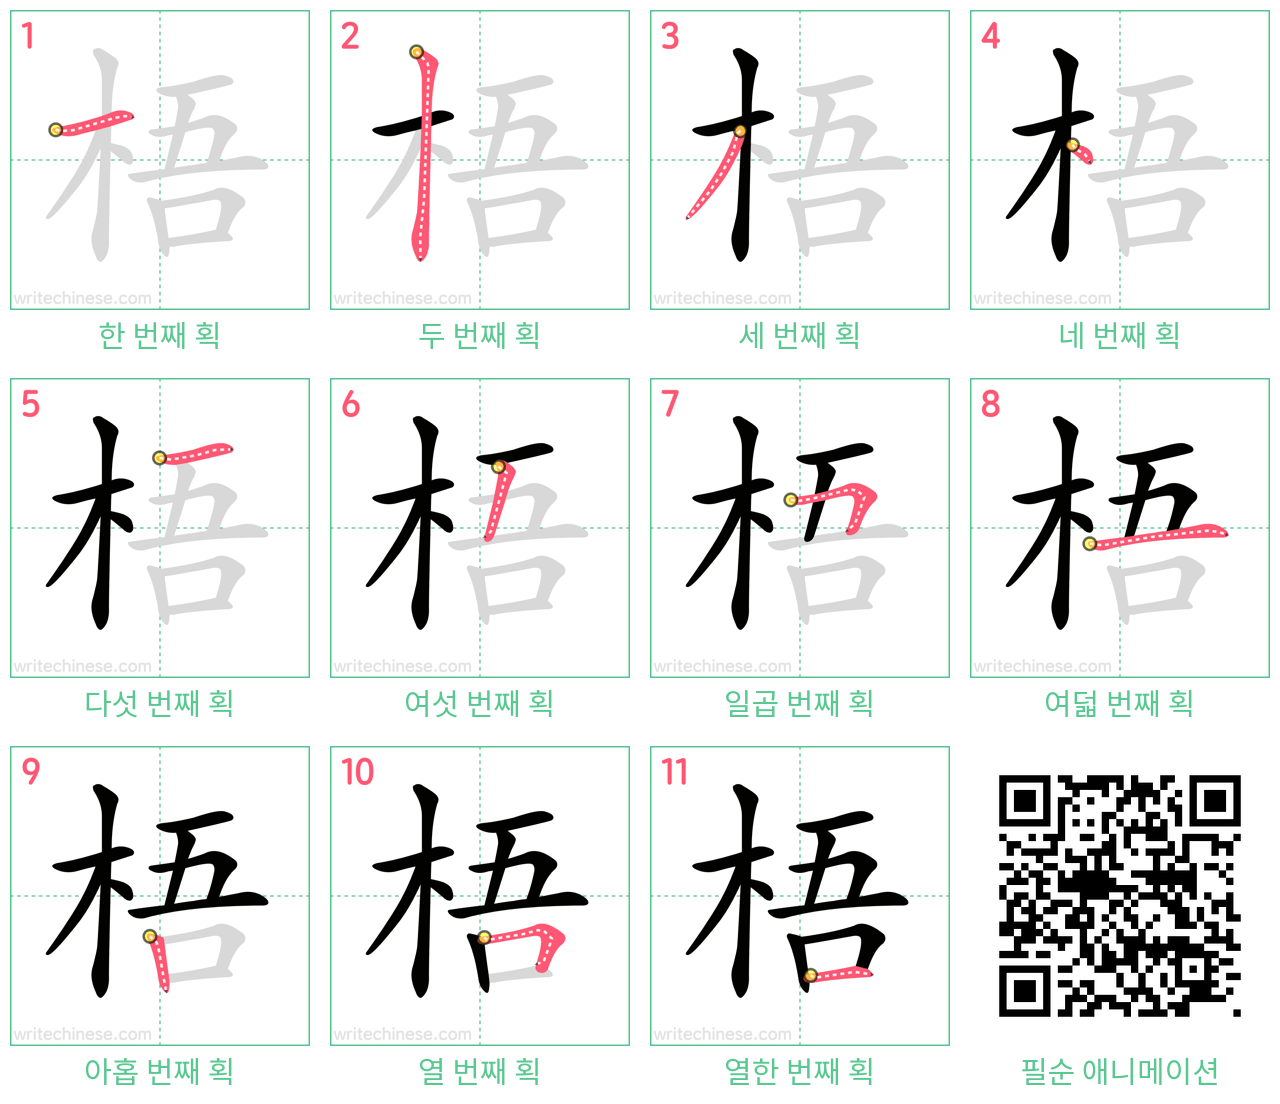 梧 step-by-step stroke order diagrams